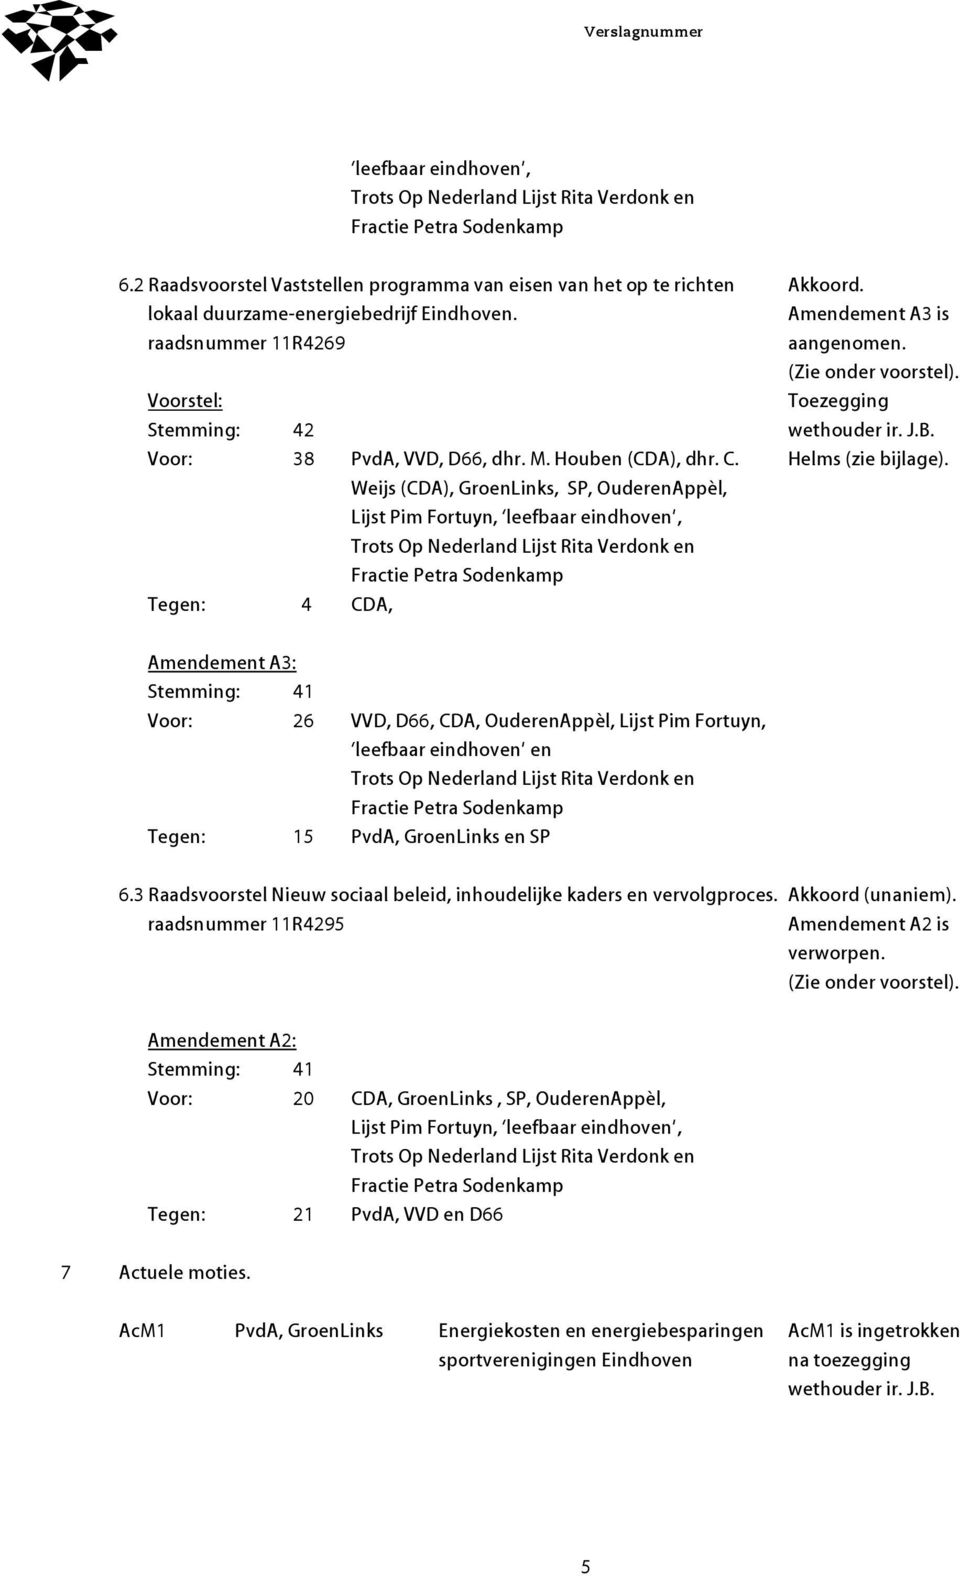 Weijs (CDA), GroenLinks, SP, OuderenAppèl, Lijst Pim Fortuyn, leefbaar eindhoven, Trots Op Nederland Lijst Rita Verdonk en Fractie Petra Sodenkamp Tegen: 4 CDA, Akkoord. Amendement A3 is aangenomen.